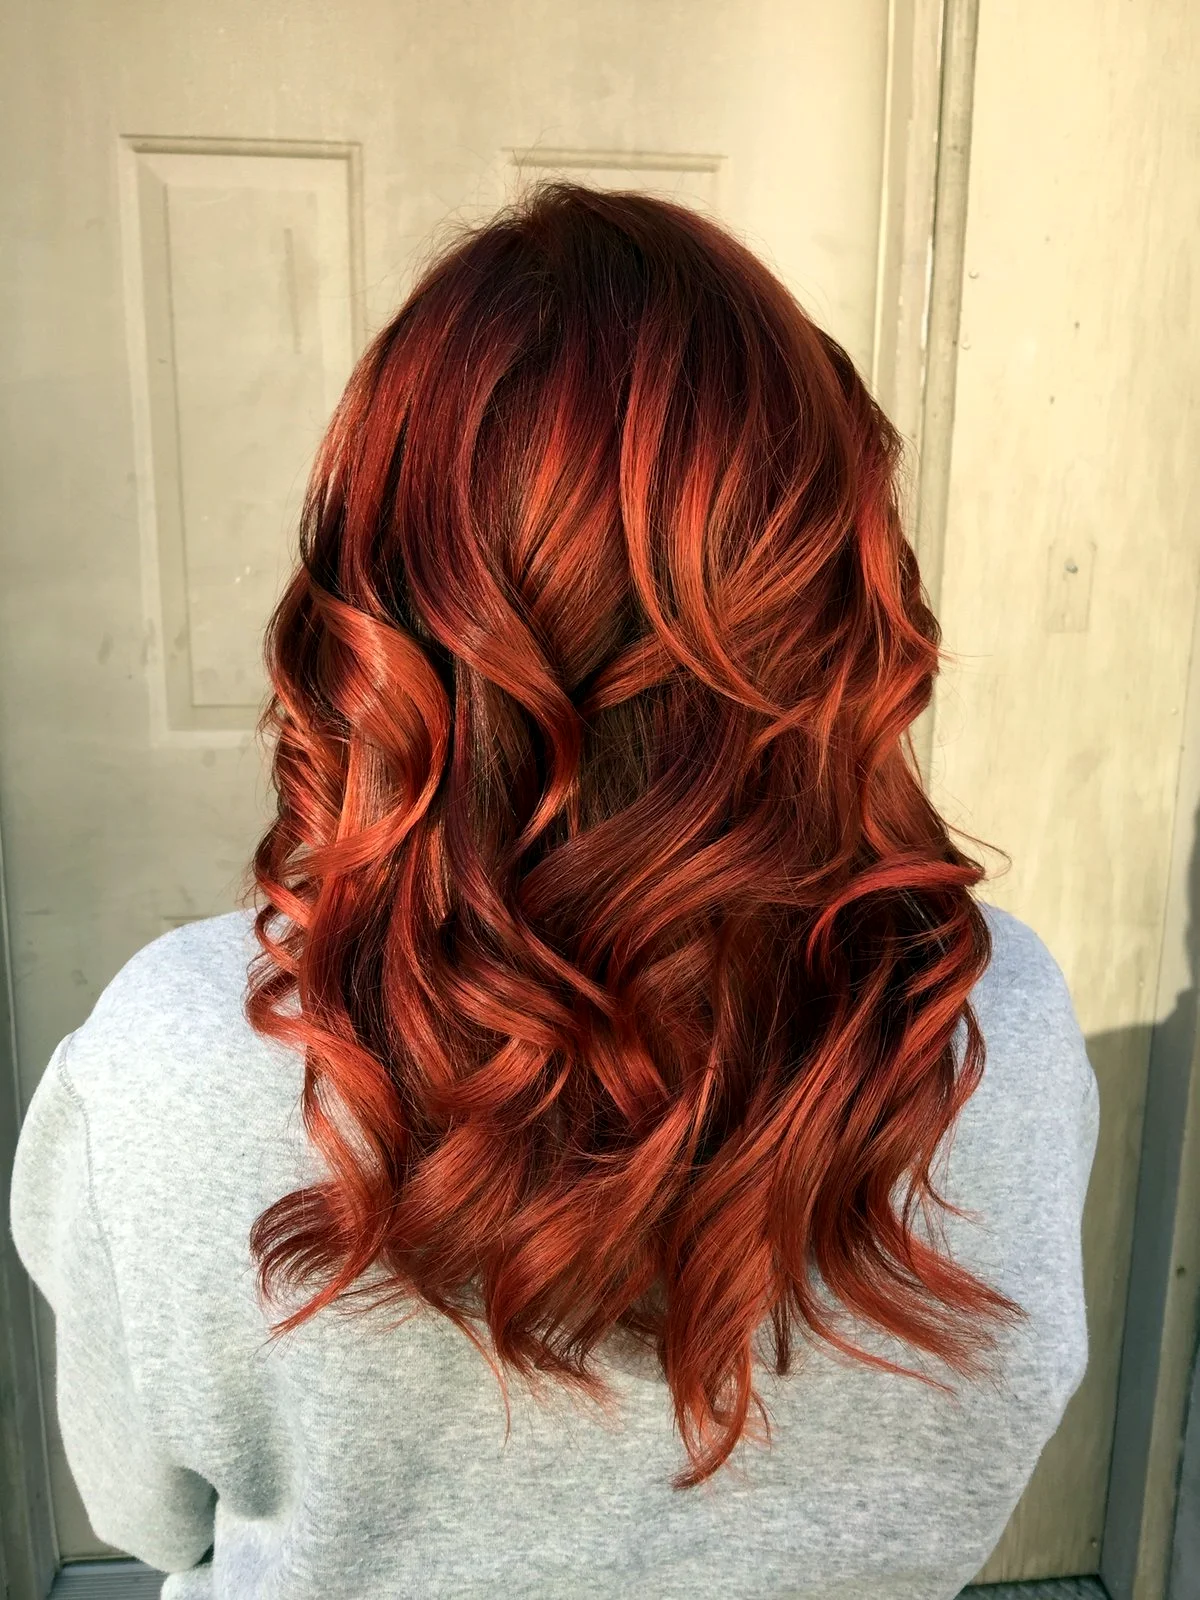 Окрашивание волос с рыжими прядями